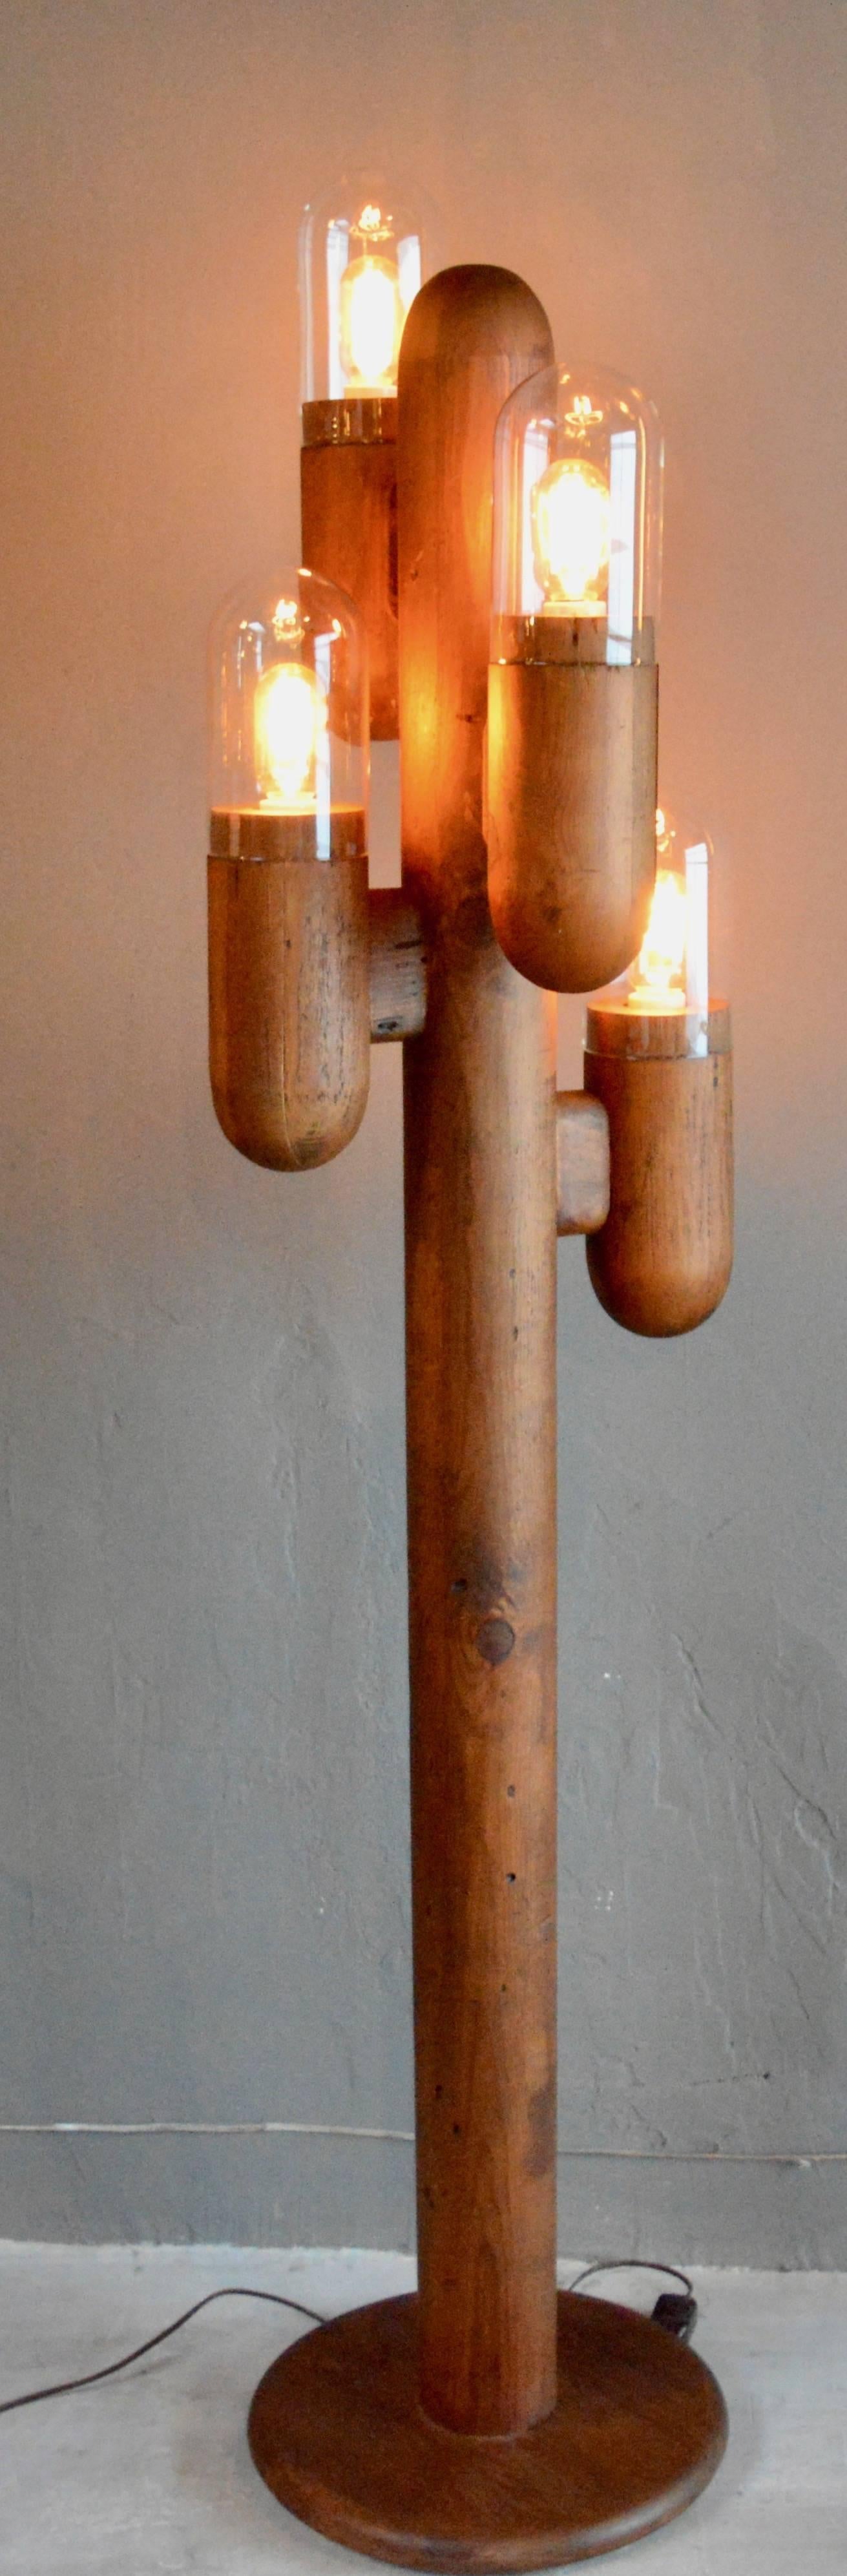 wood cactus lamp